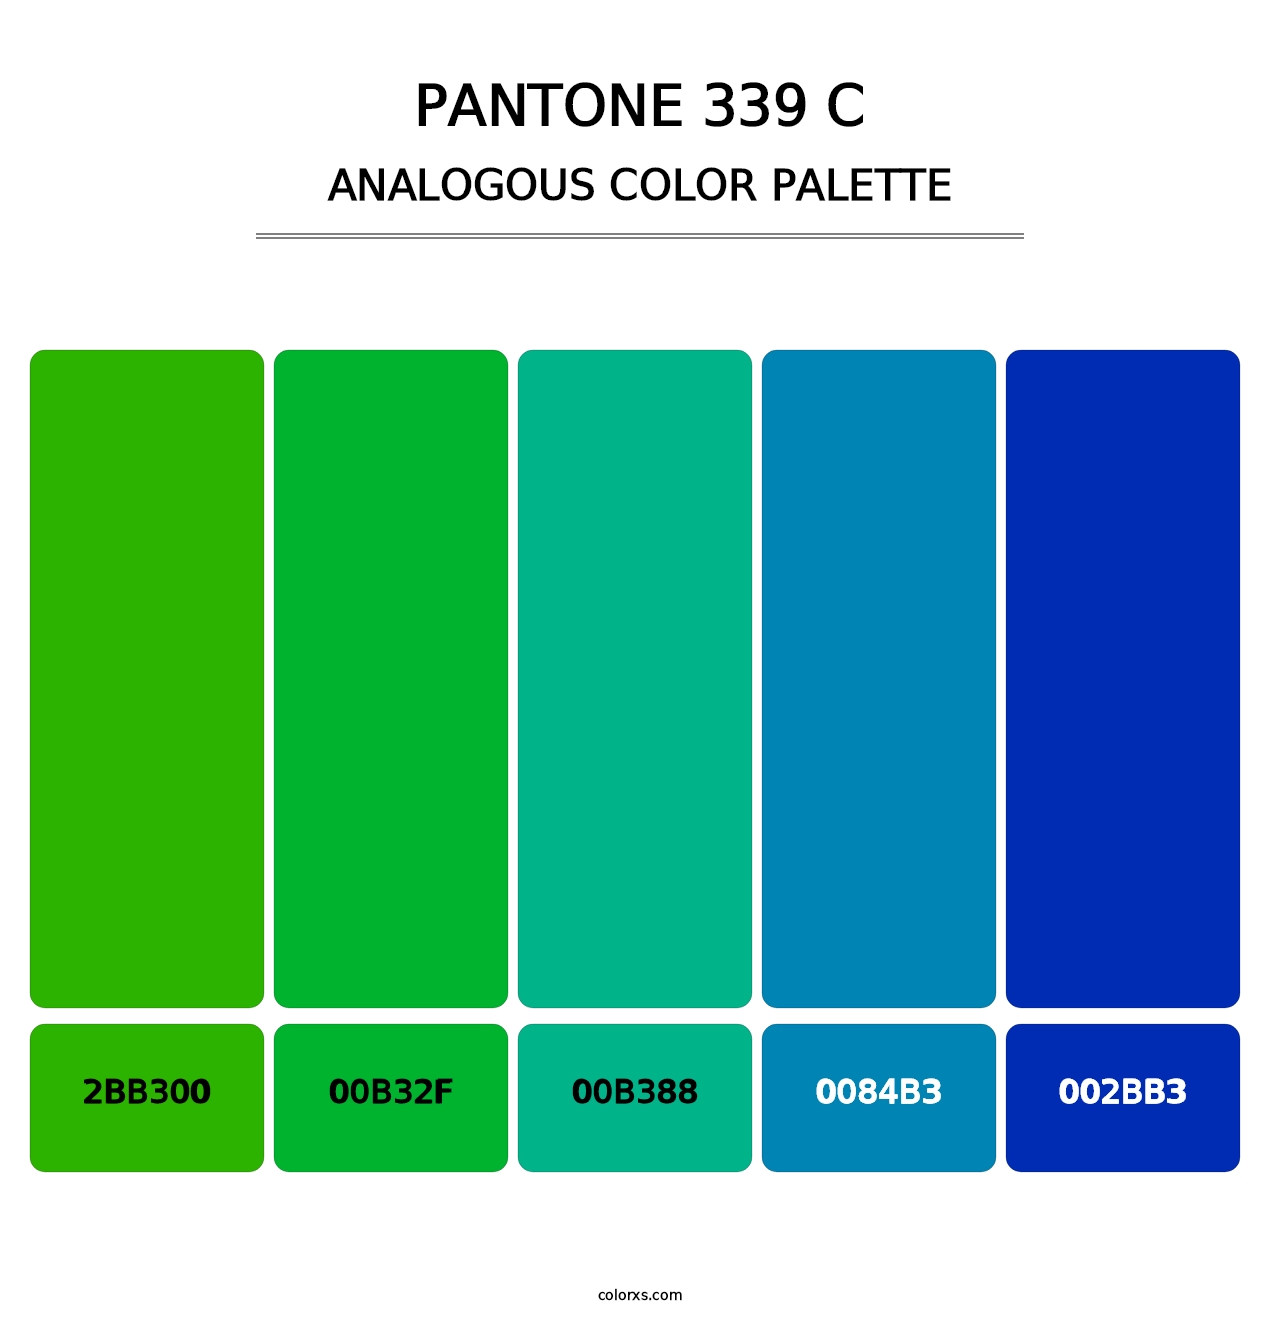 PANTONE 339 C - Analogous Color Palette